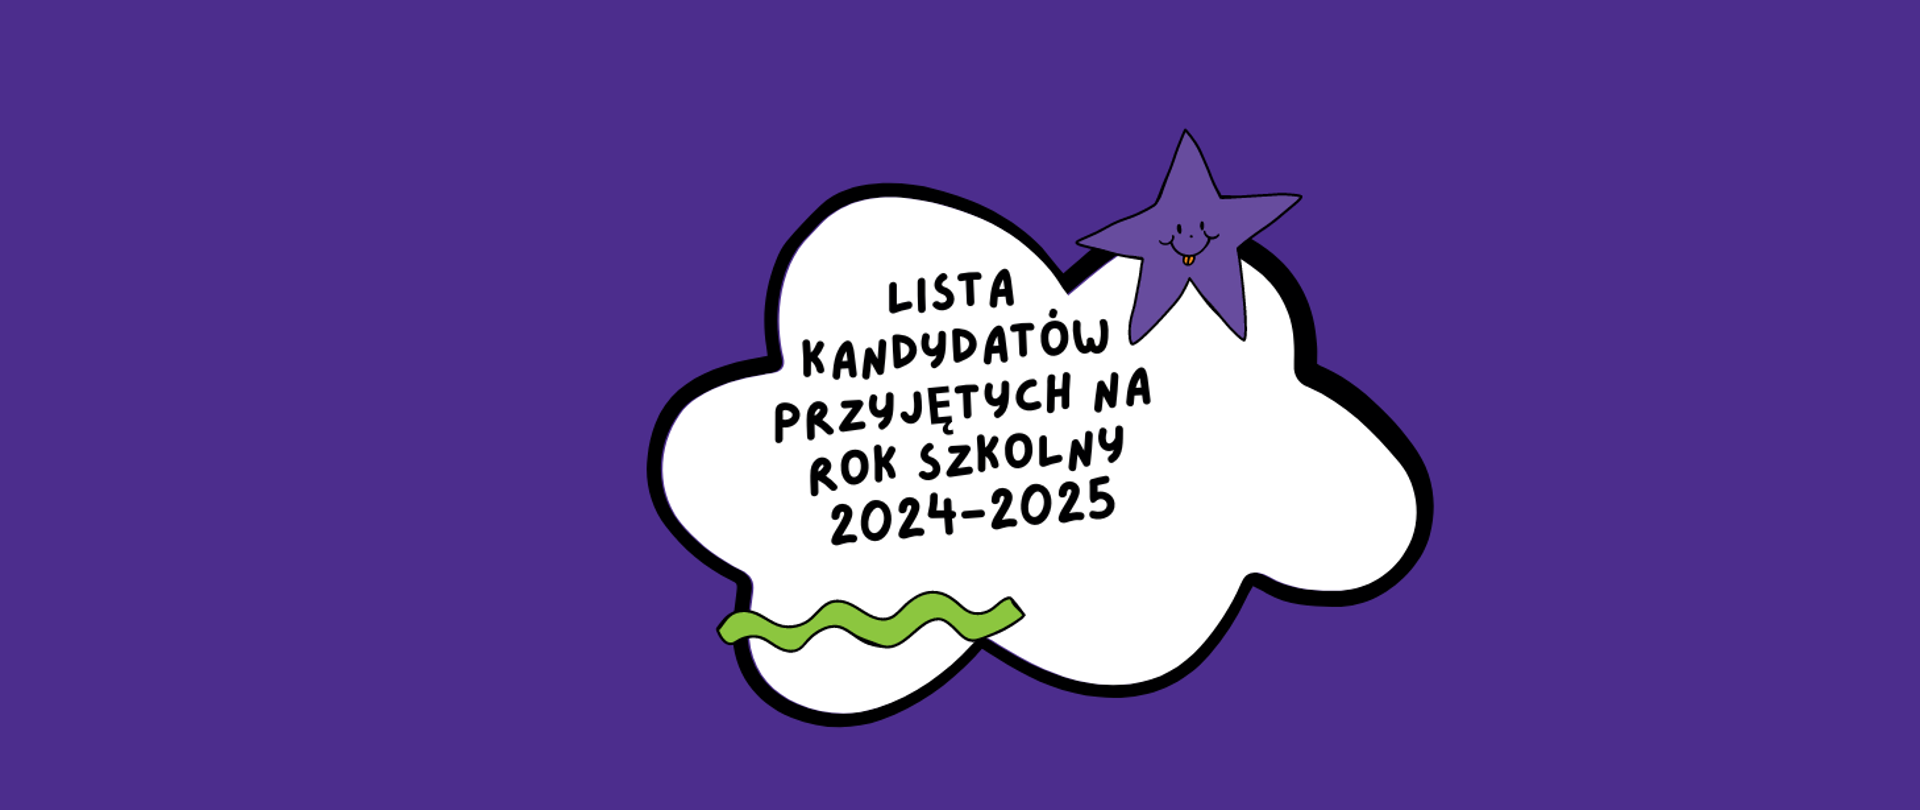 Plakat na fioletowym tle chmurka z gwiazdą, napis lista kandydatów przyjętych na rok szkolny 2024-2025